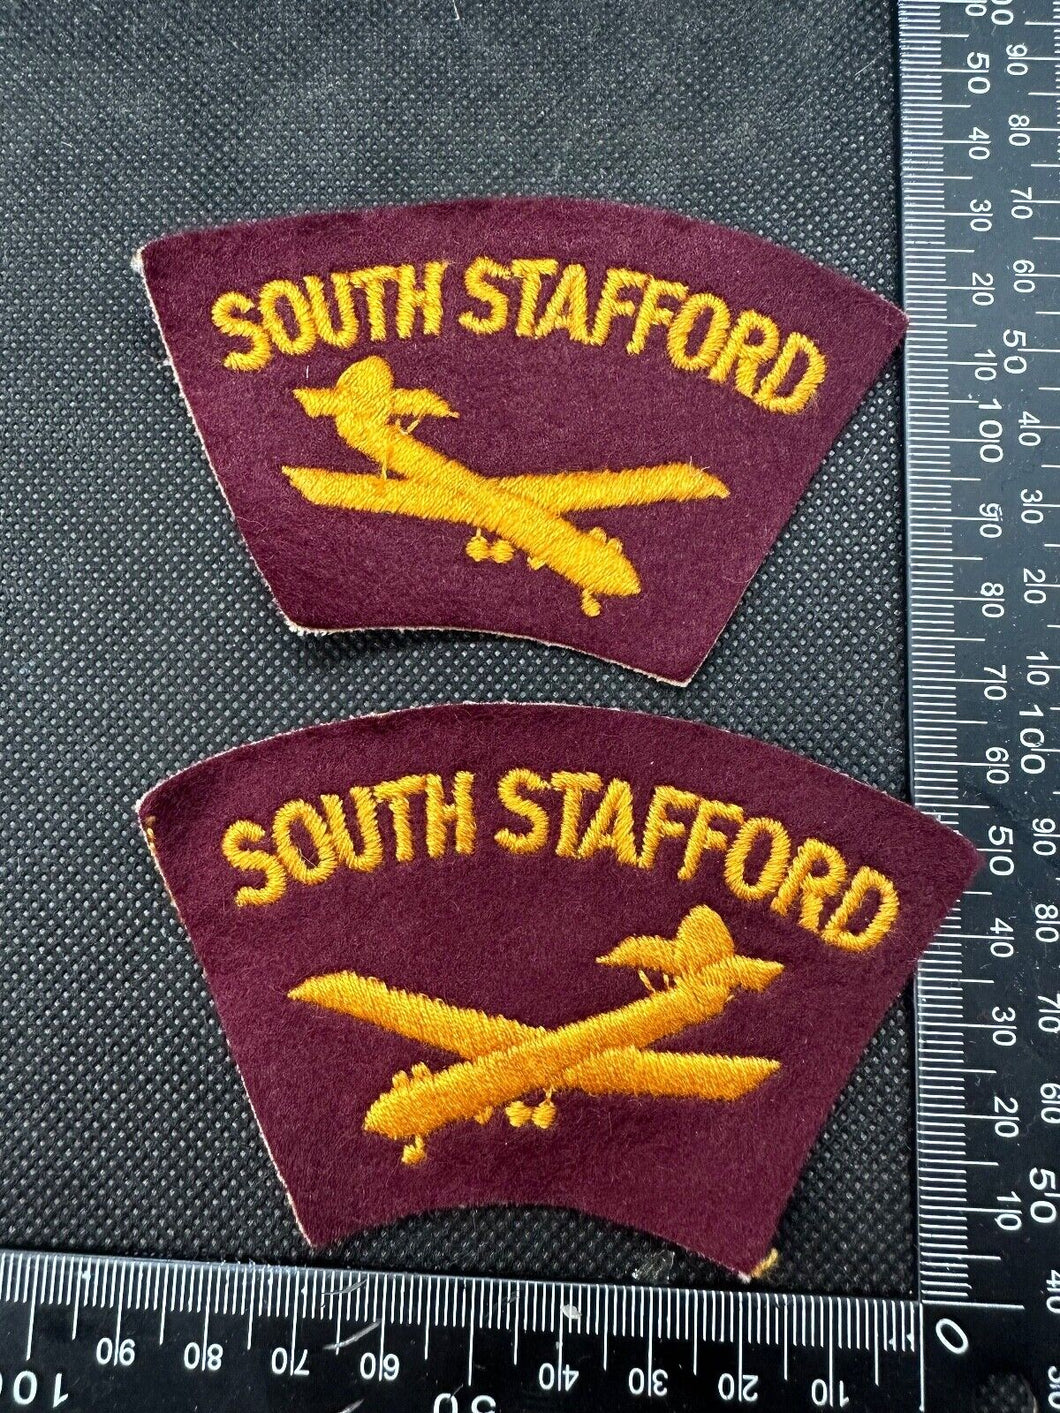 South Stafford Regiment RAF British Army Shoulder Titles - WW2 Onwards Pattern